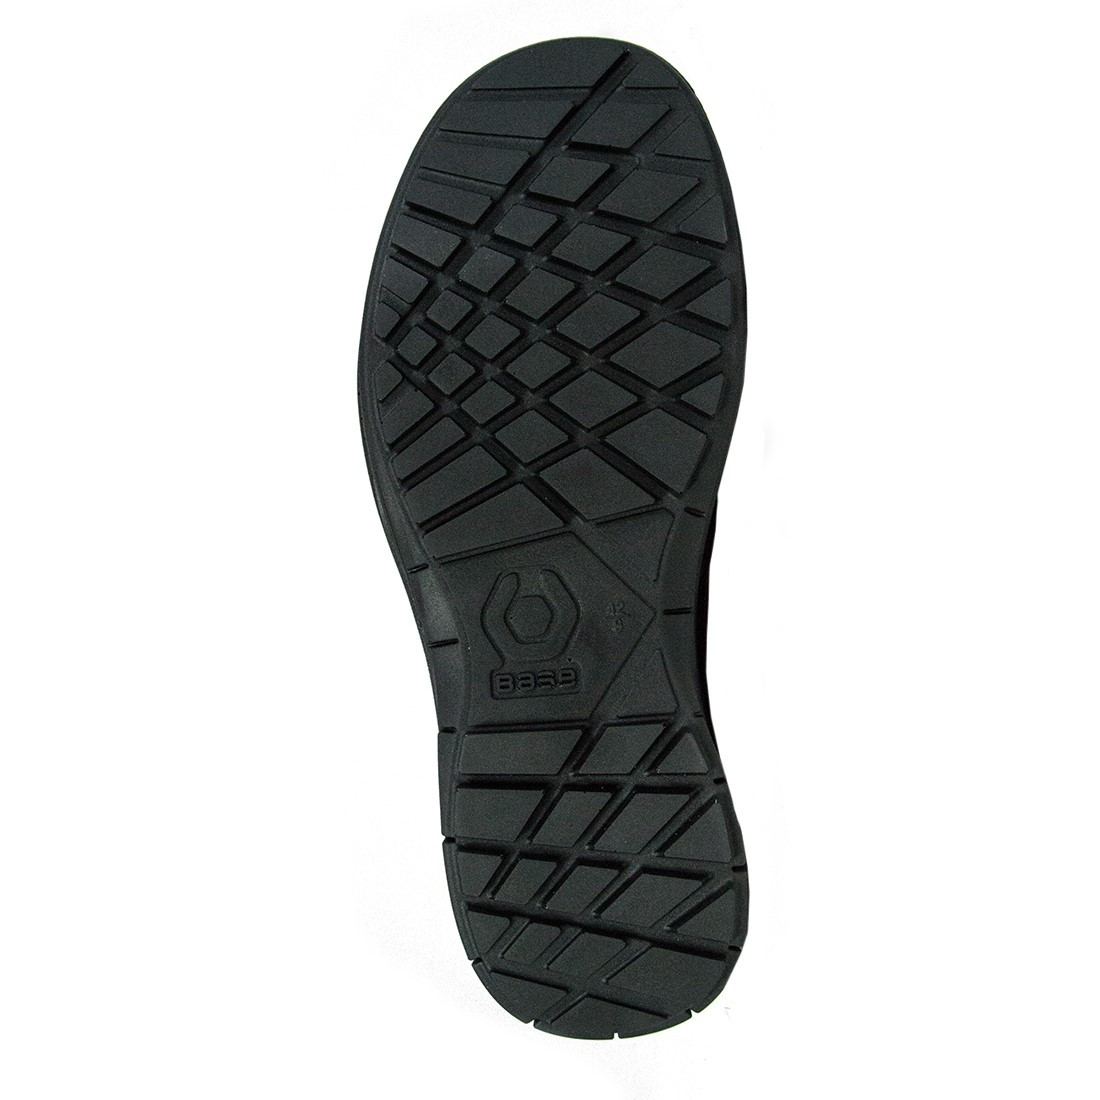 Bottes Izar Top S3 CI SRC - Les chaussures de protection